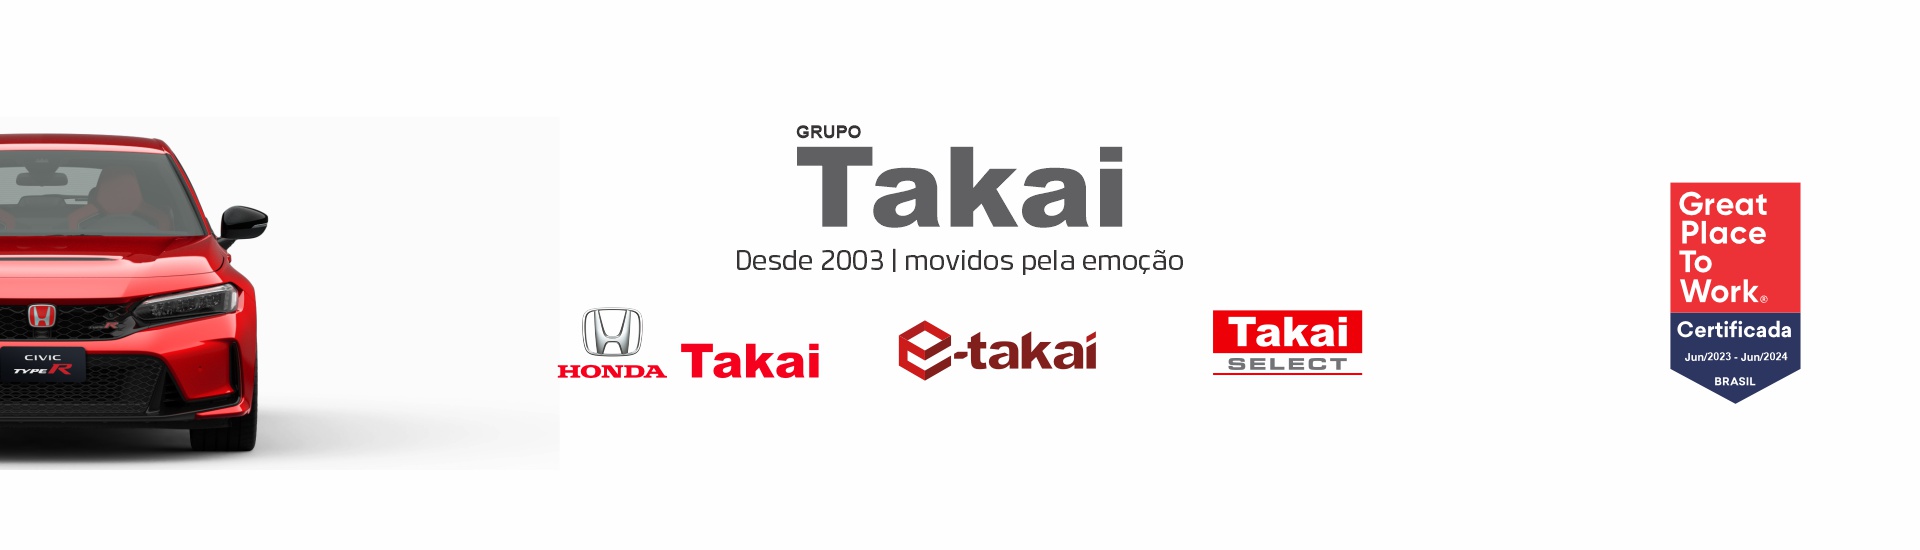 Grupo Takai